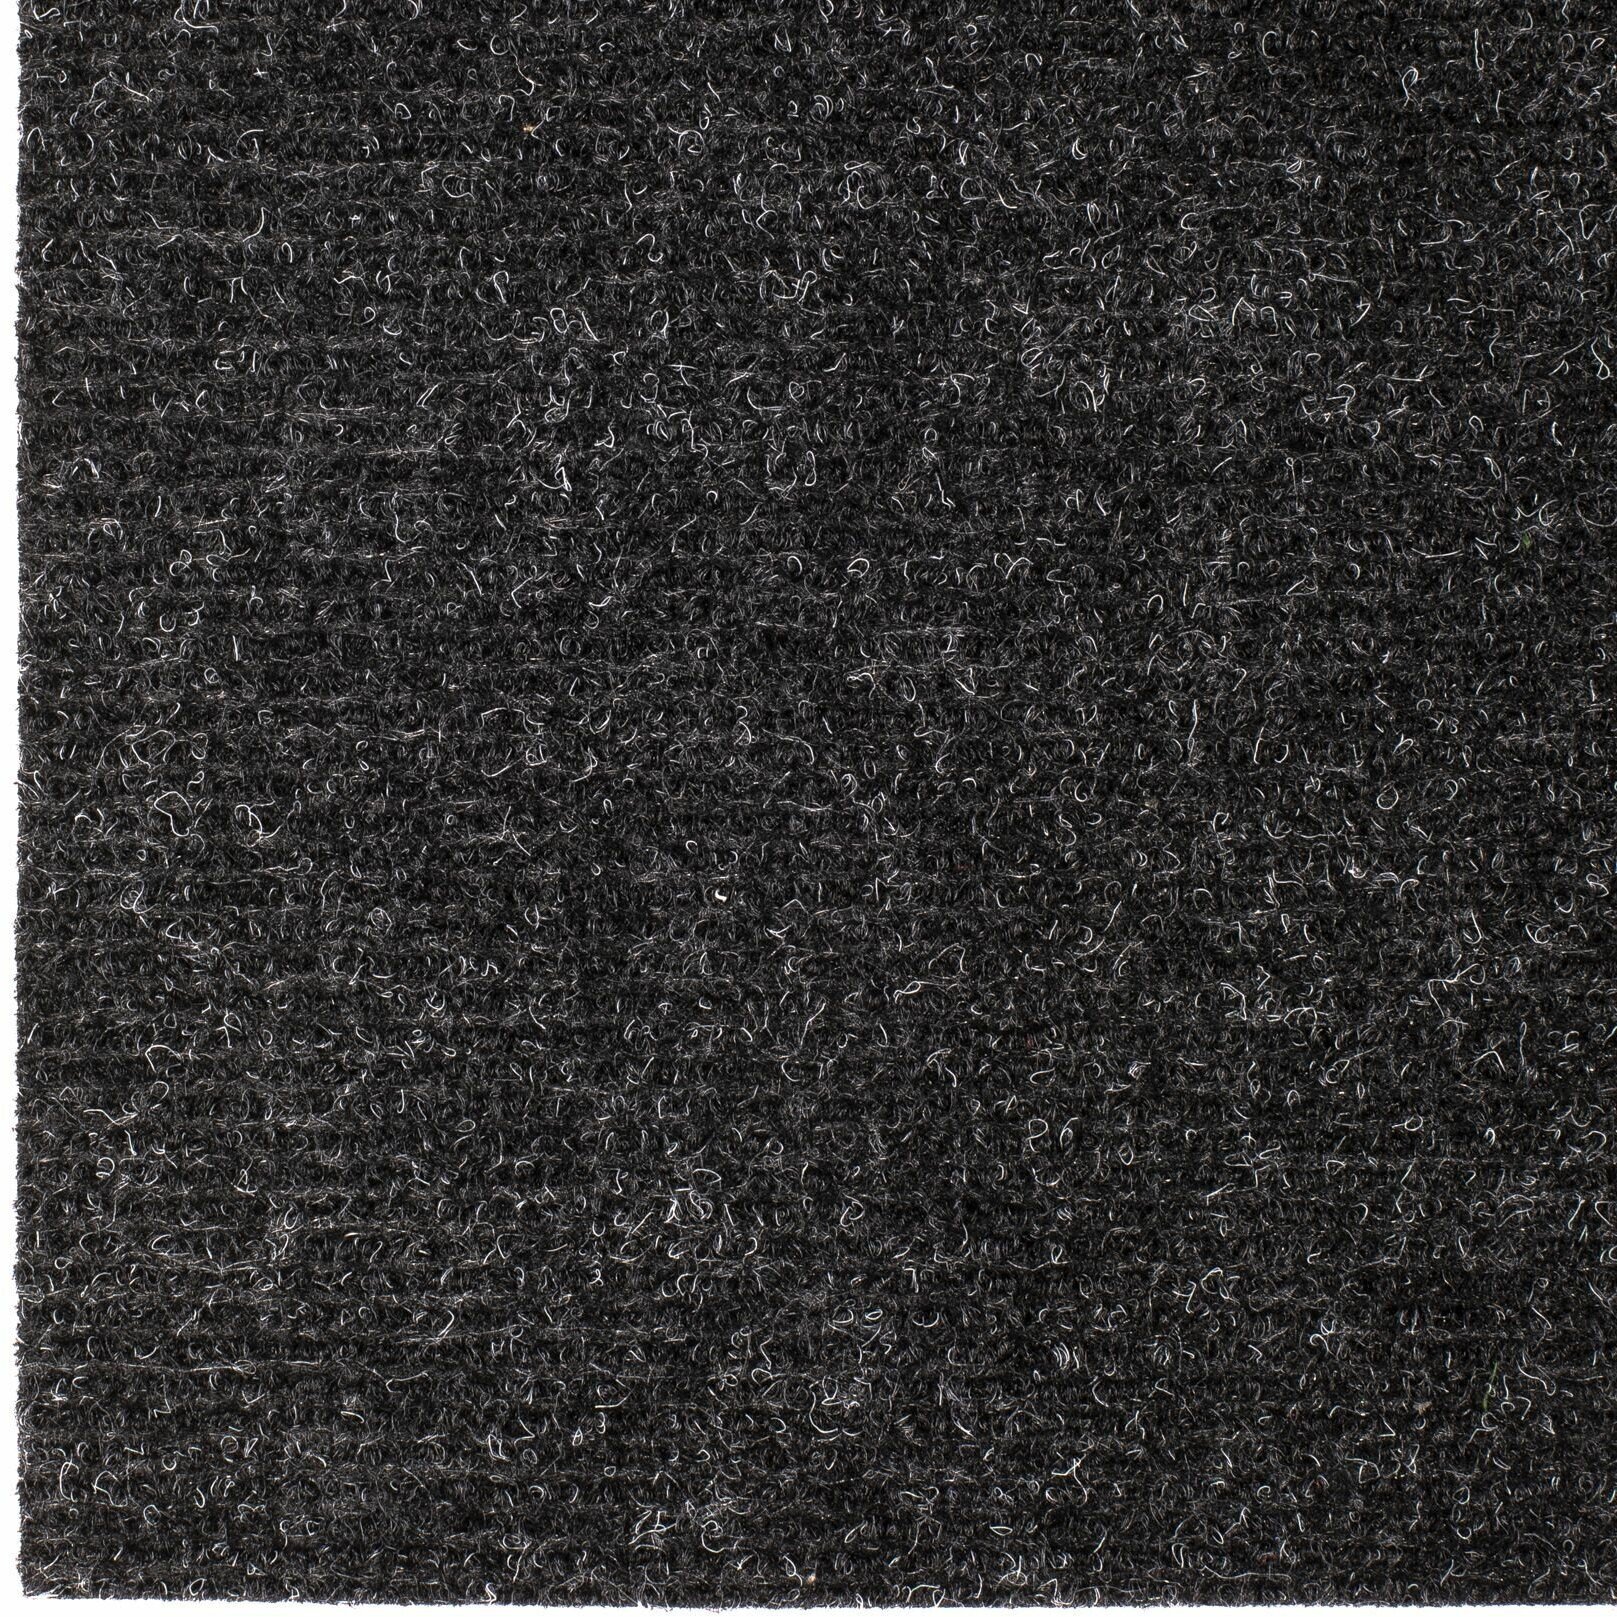 Иглопробивной коврик входной грязезащитный Betap "Dessert 78" на пол. Ковер черного цвета, размер 0,8х1м. - фотография № 2